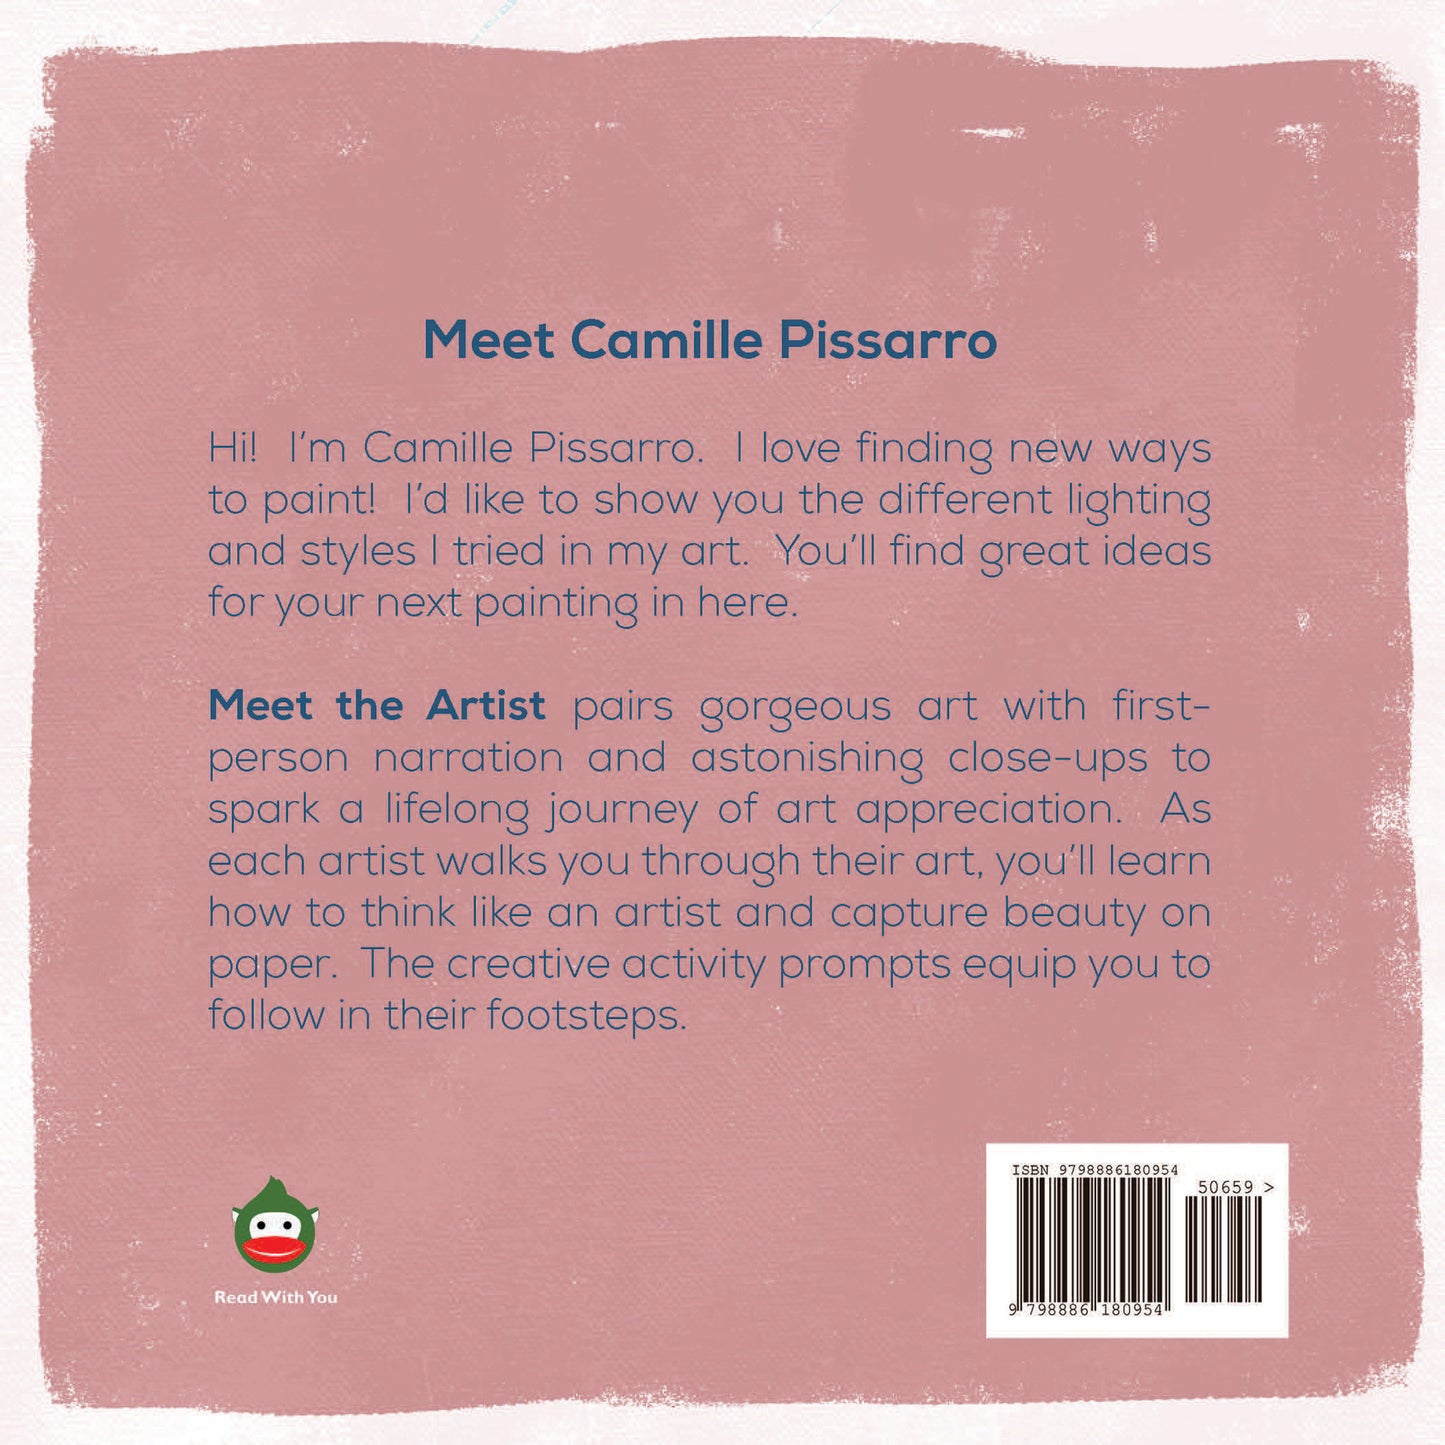 Meet Camille Pissarro